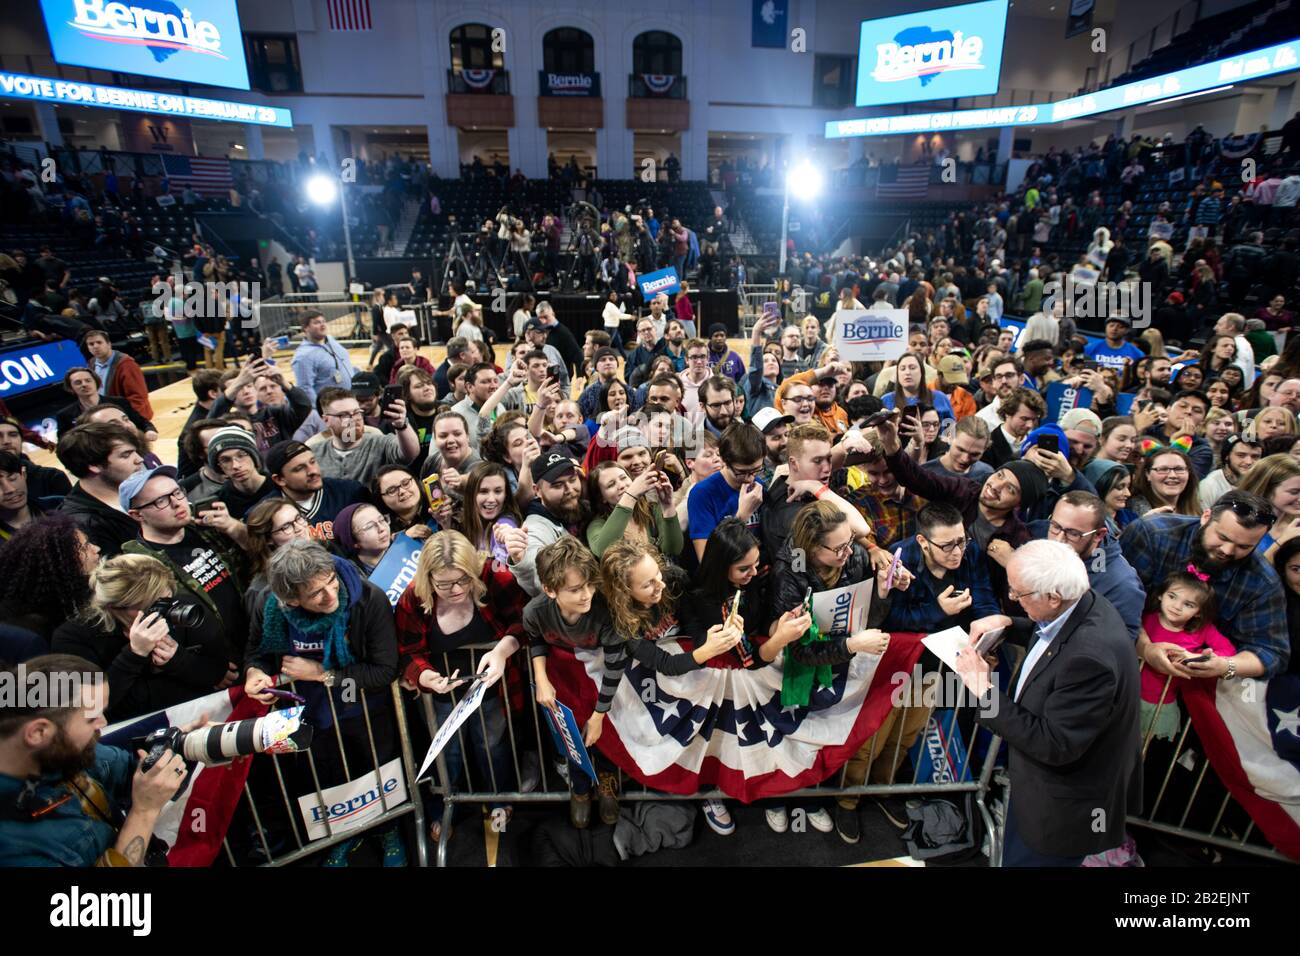 Bernie Sanders, candidate à la présidence démocrate, lors d'un rassemblement de campagne au Wofford College en Caroline du Sud. Banque D'Images